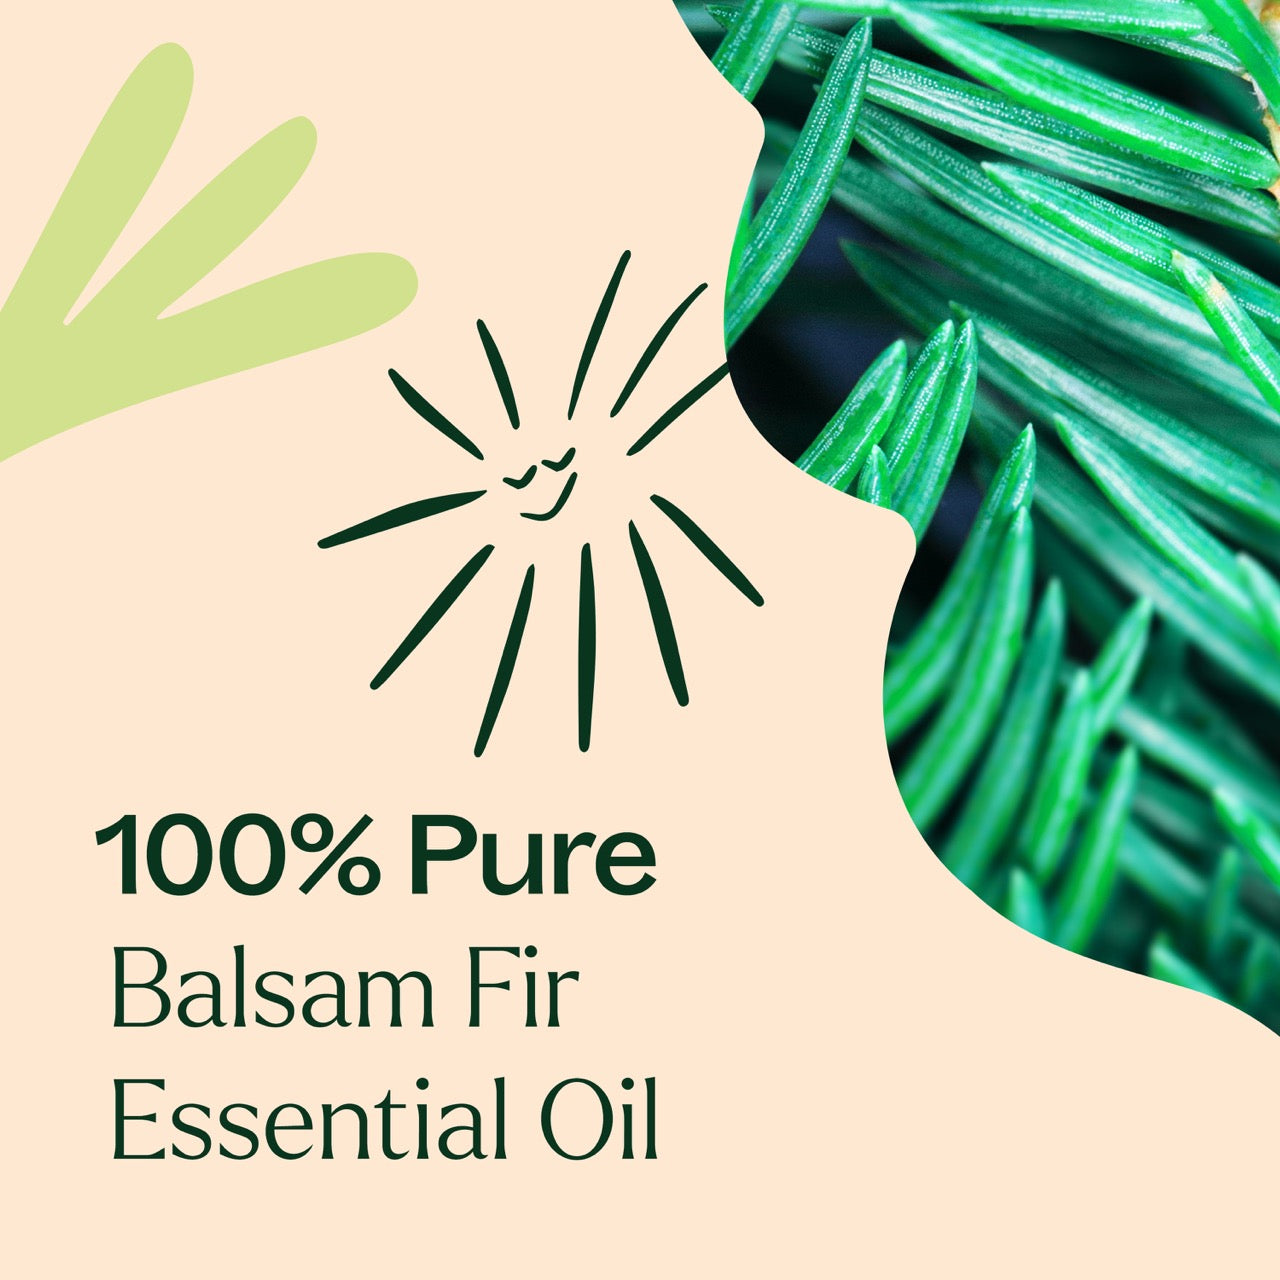 100% pure Balsam Fir Essential Oil